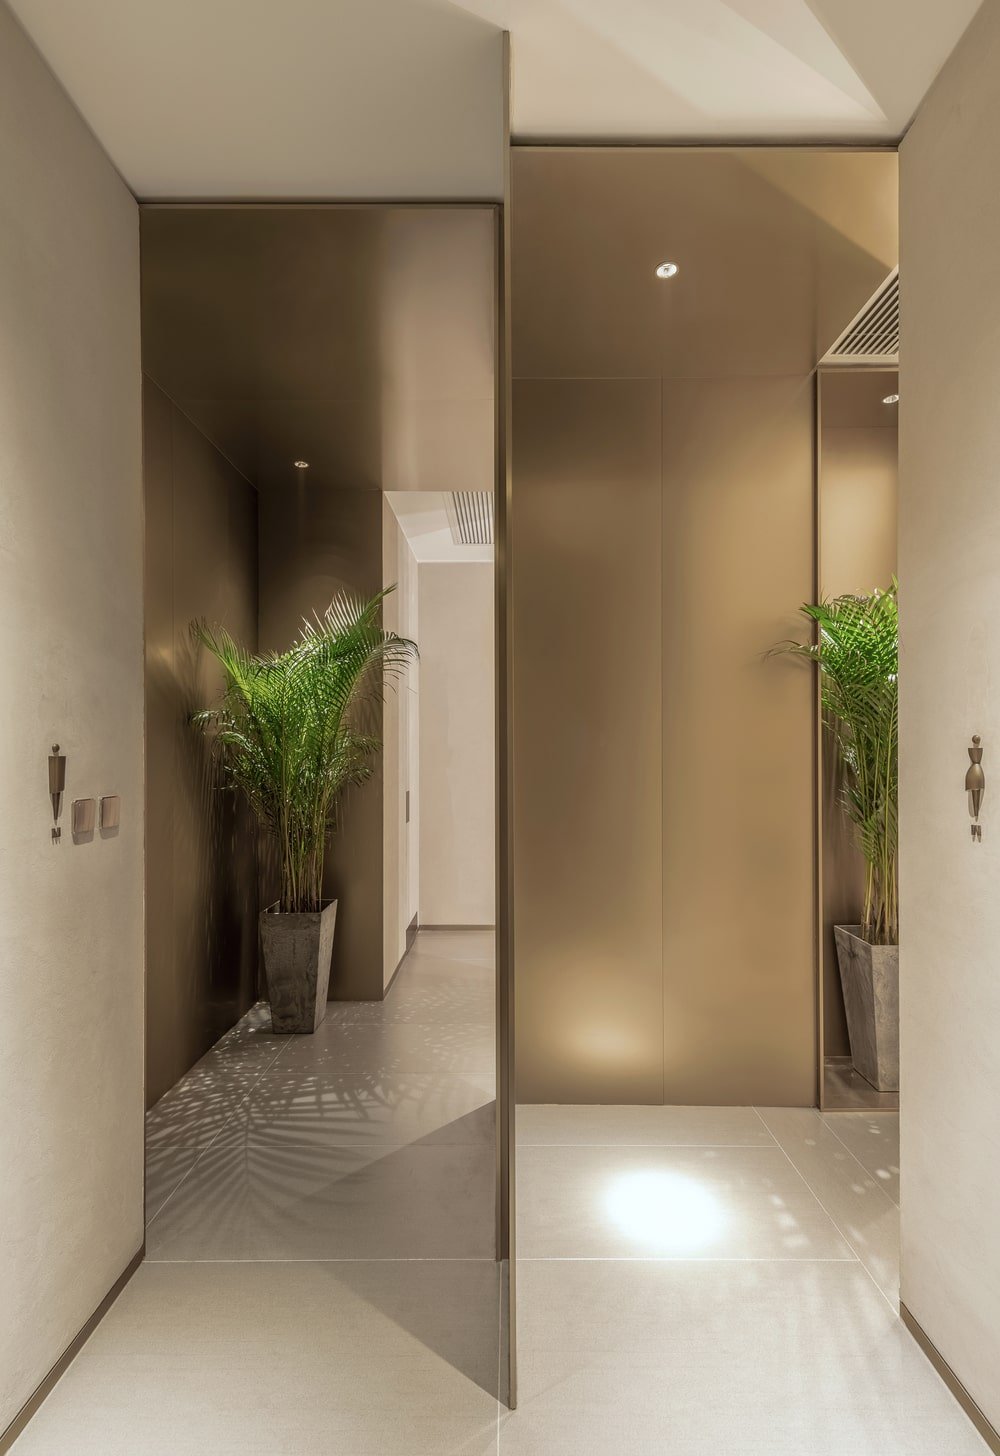 这是一个近距离观察男性和女性舒适室的入口，装饰着盆栽植物。